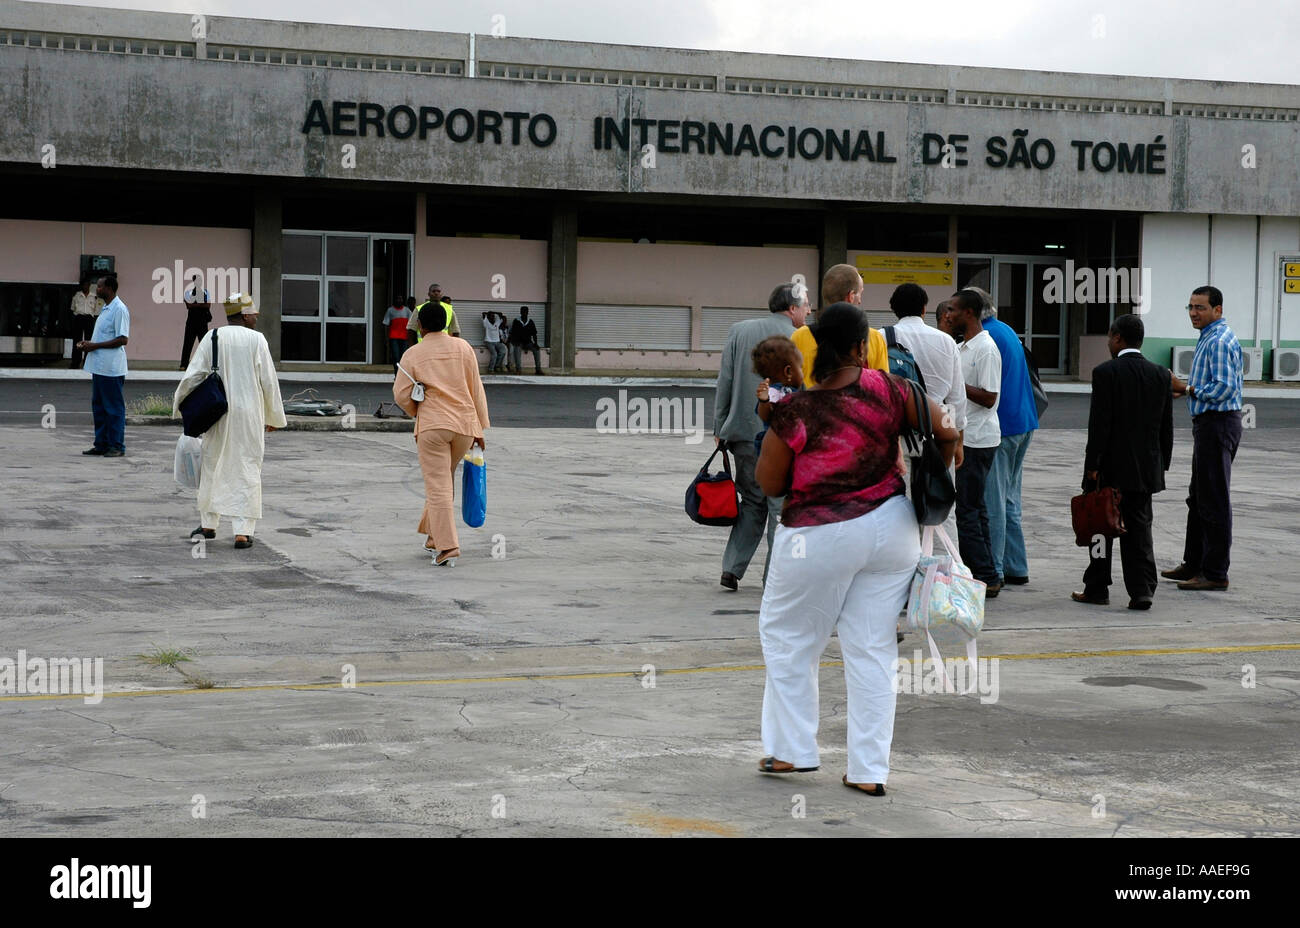 Anciennement portugais, la minuscule île de l'Atlantique de São Tomé est une république indépendante avec son propre aéroport Banque D'Images